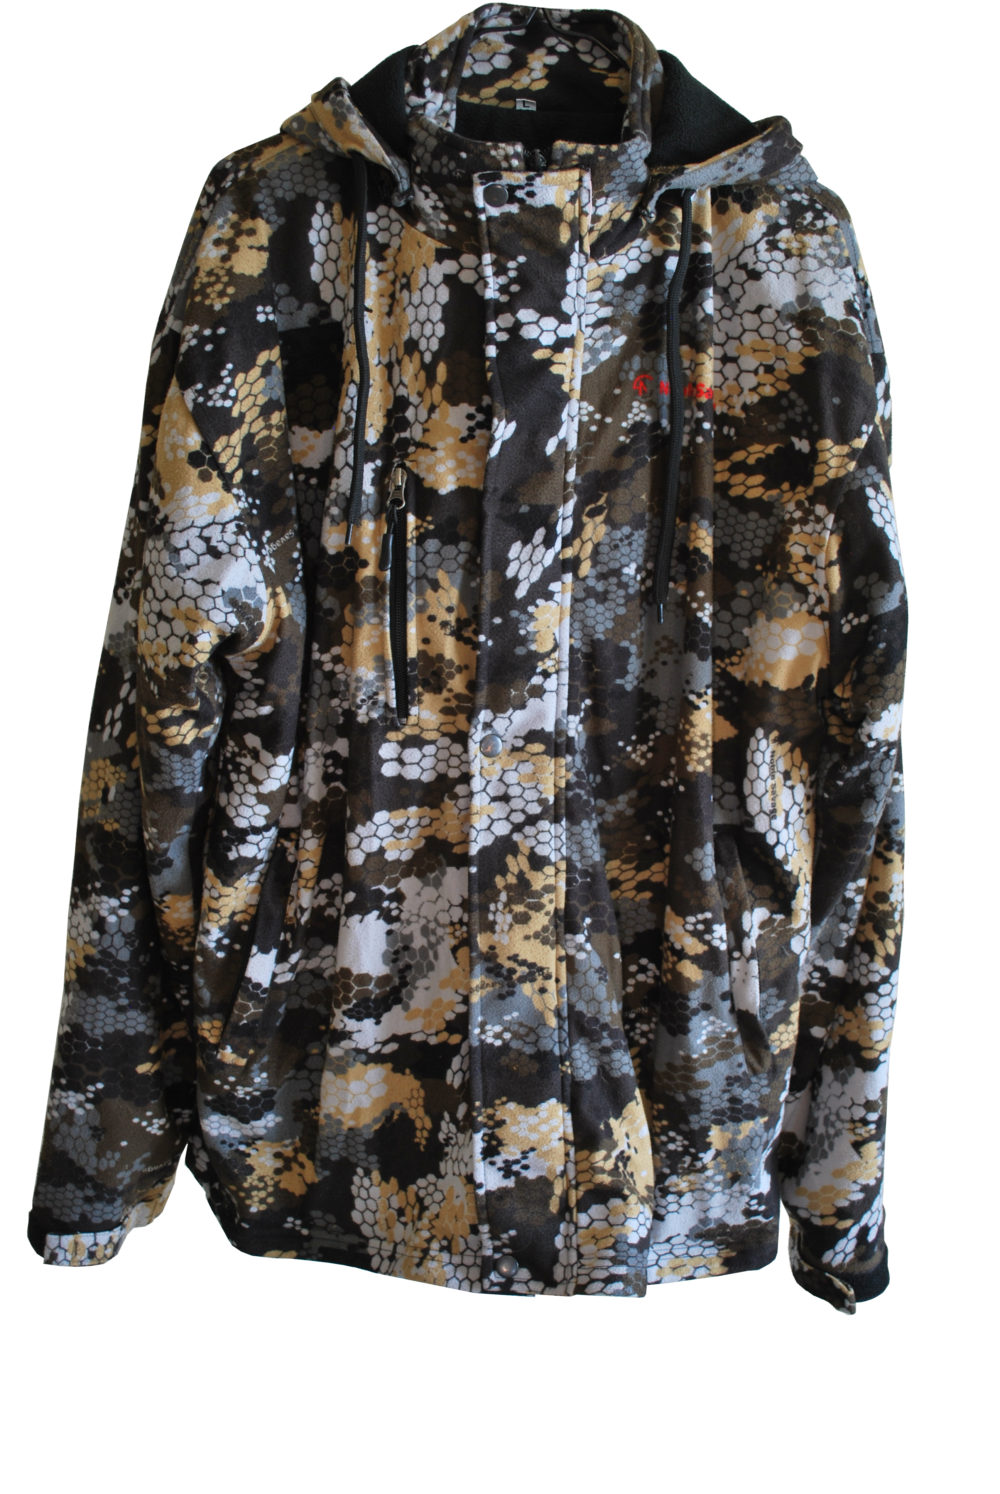 Savage Camo – Fleece Noble Jacket Lined